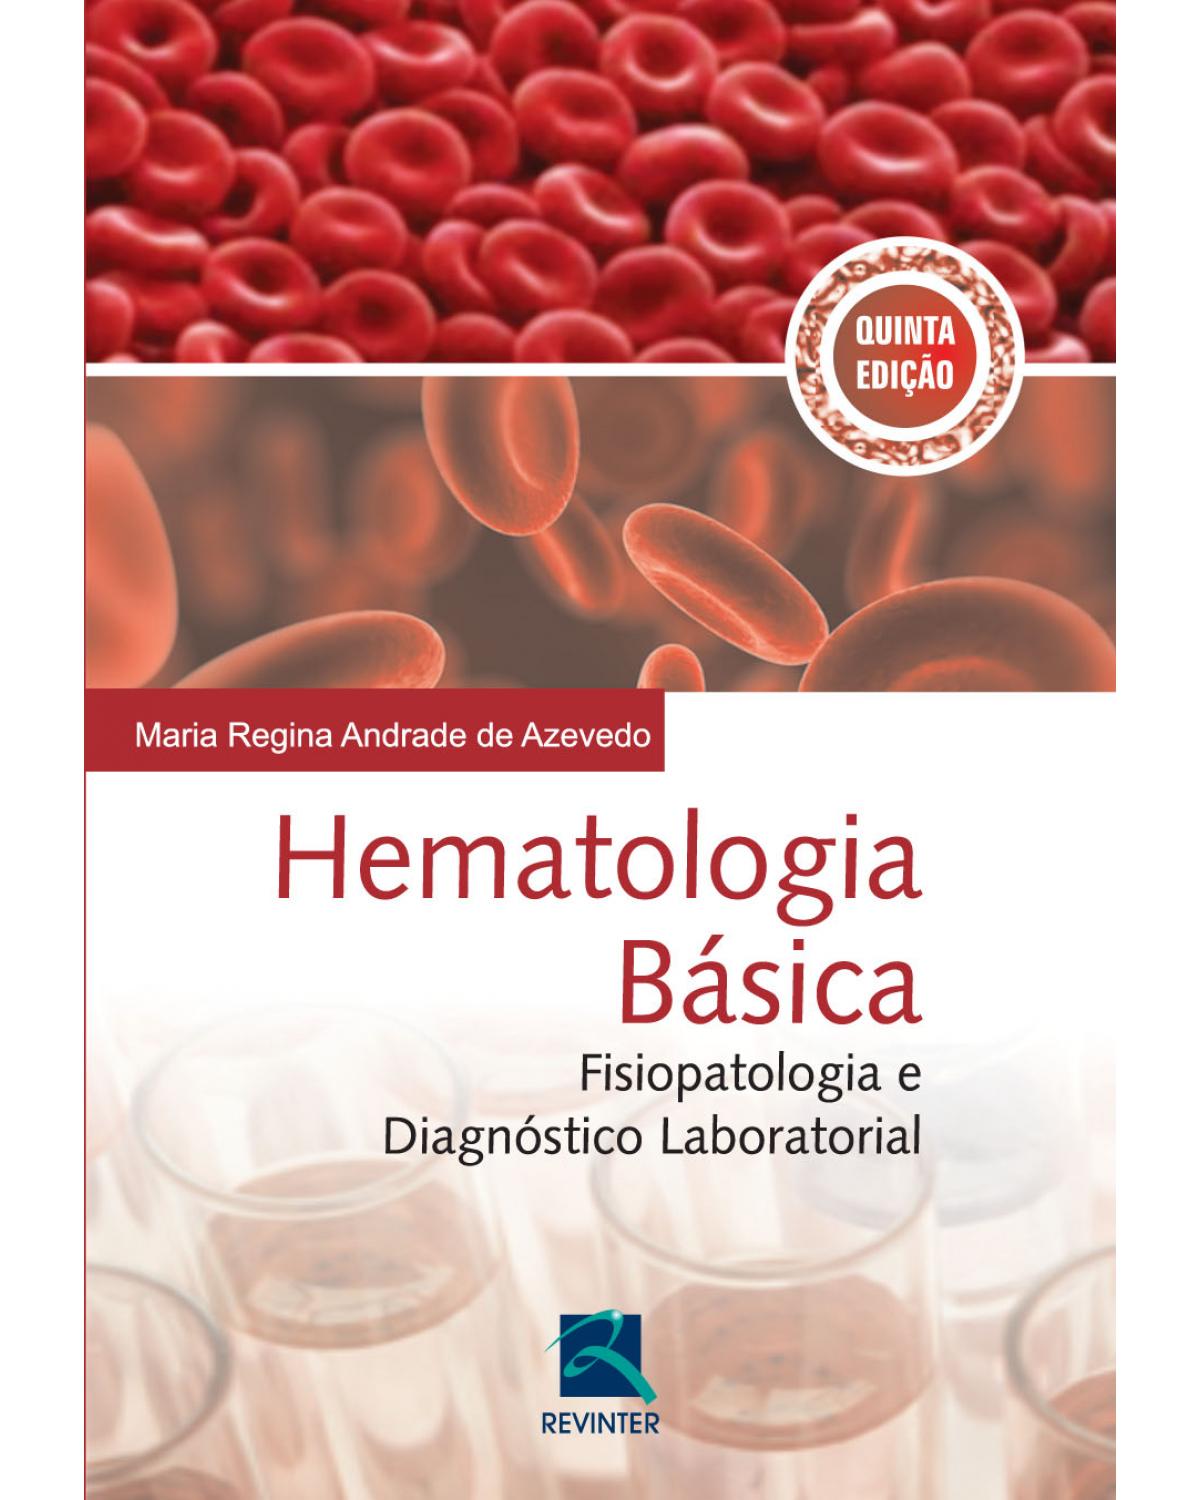 Hematologia básica - fisiopatologia e diagnóstico laboratorial - 5ª Edição | 2014